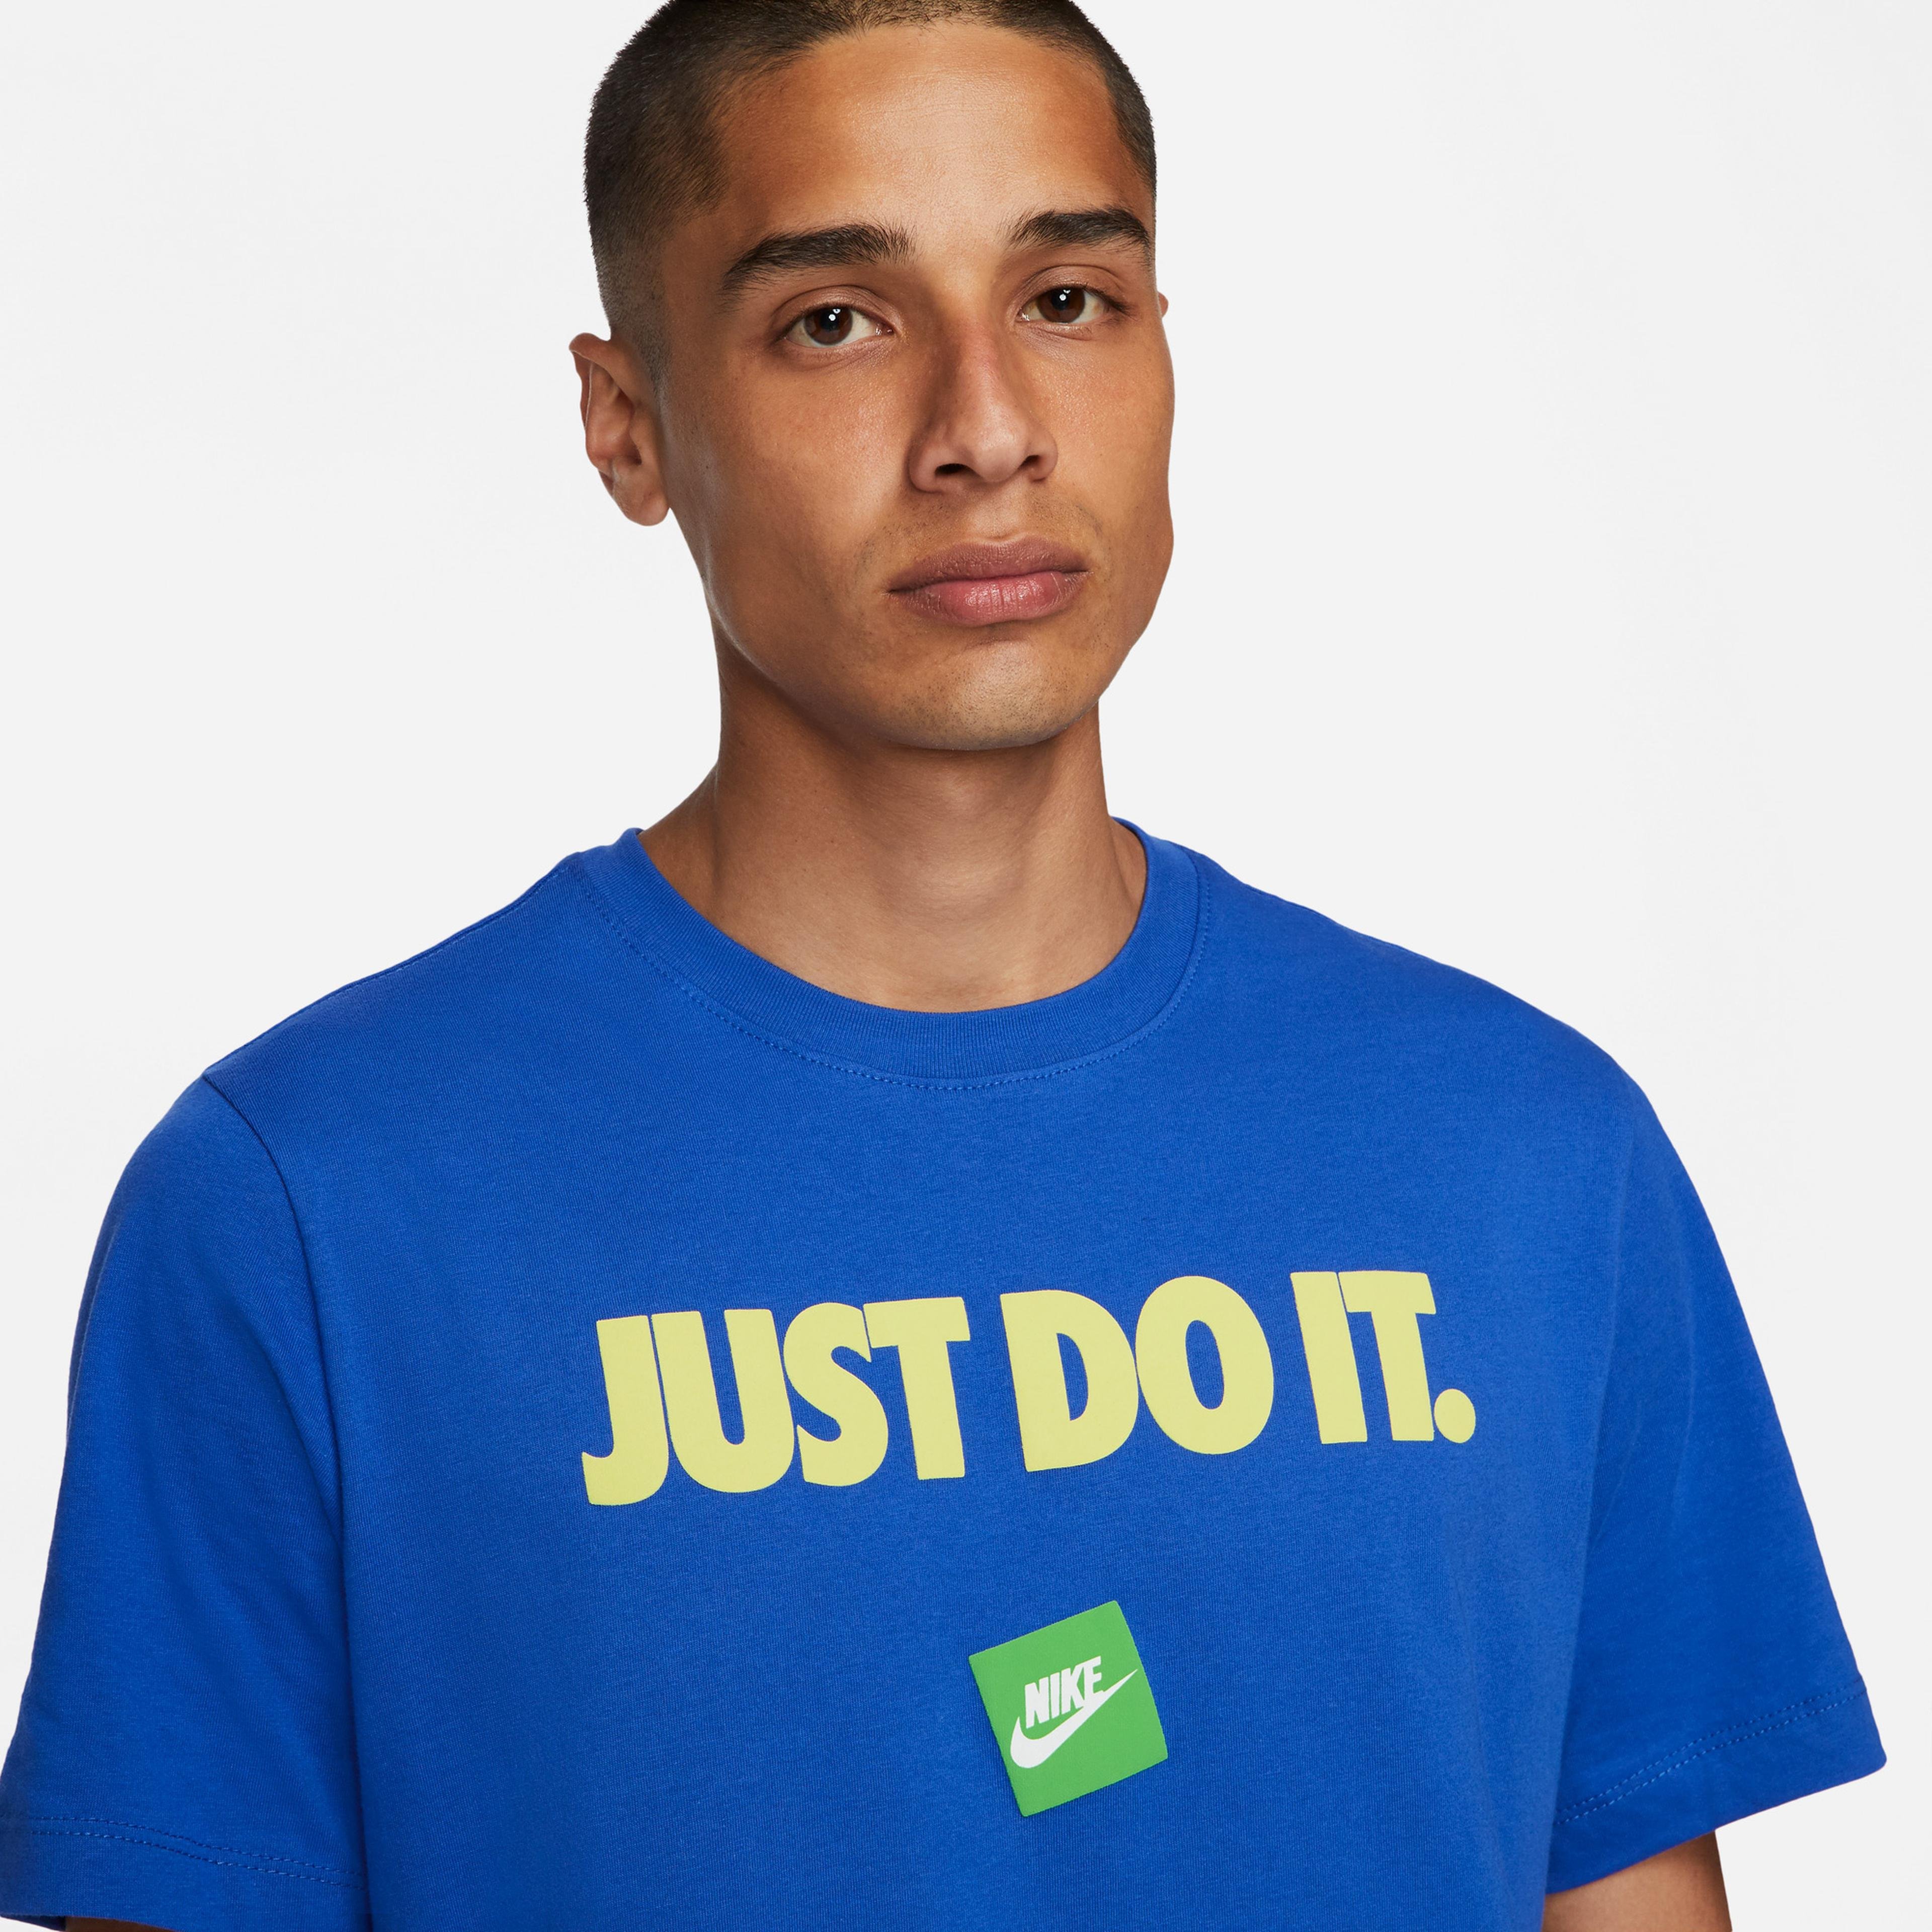 Nike Erkek Mavi T-Shirt